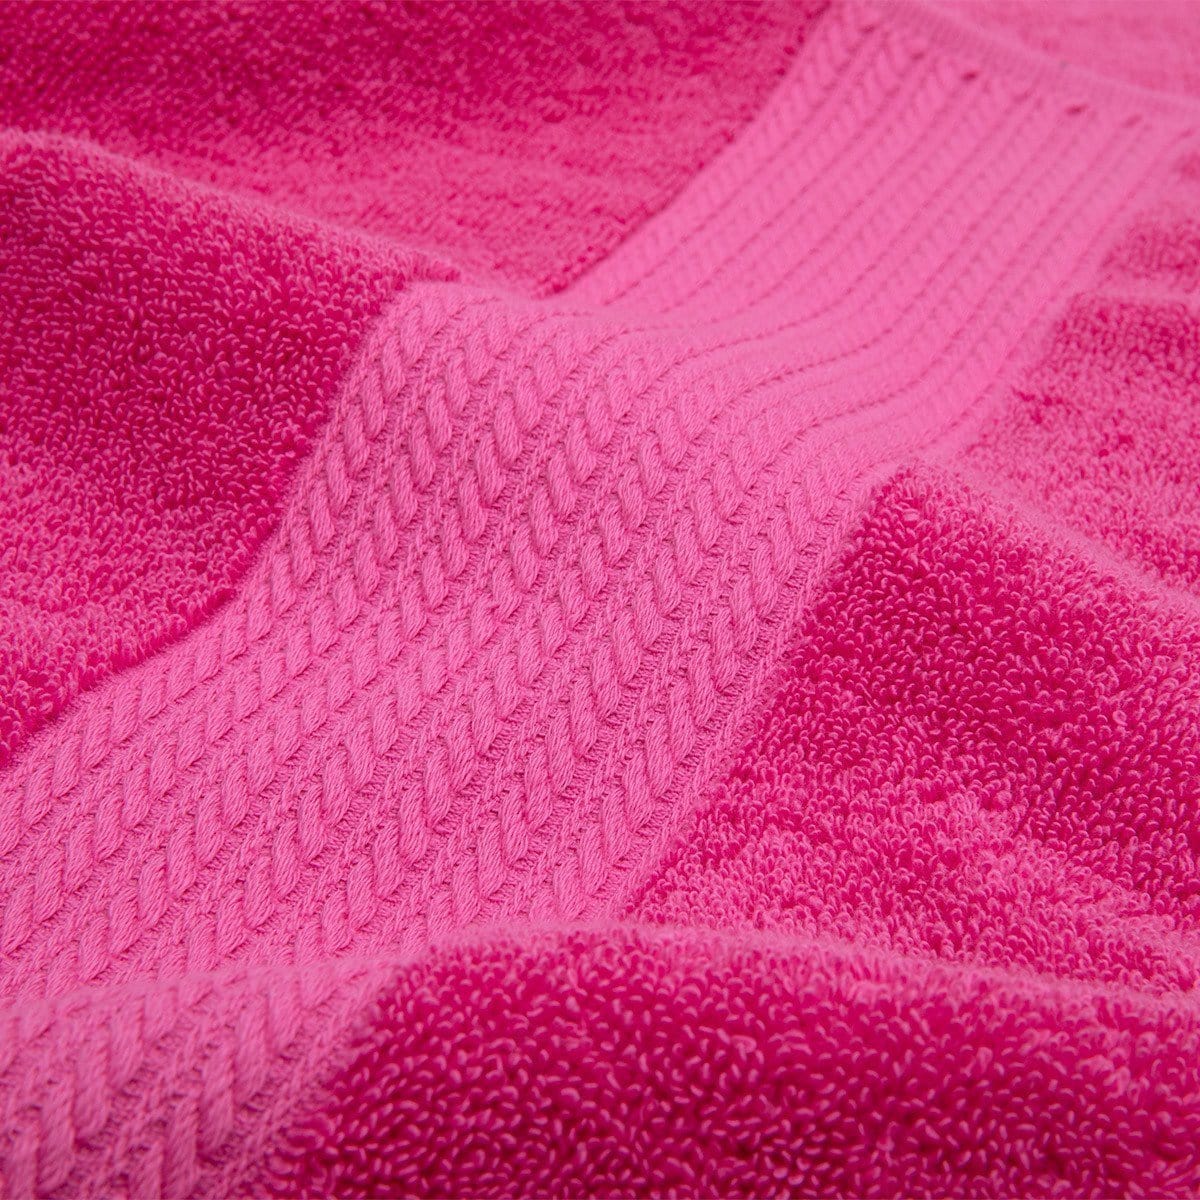 Ralph Lauren Maui Pink Towel